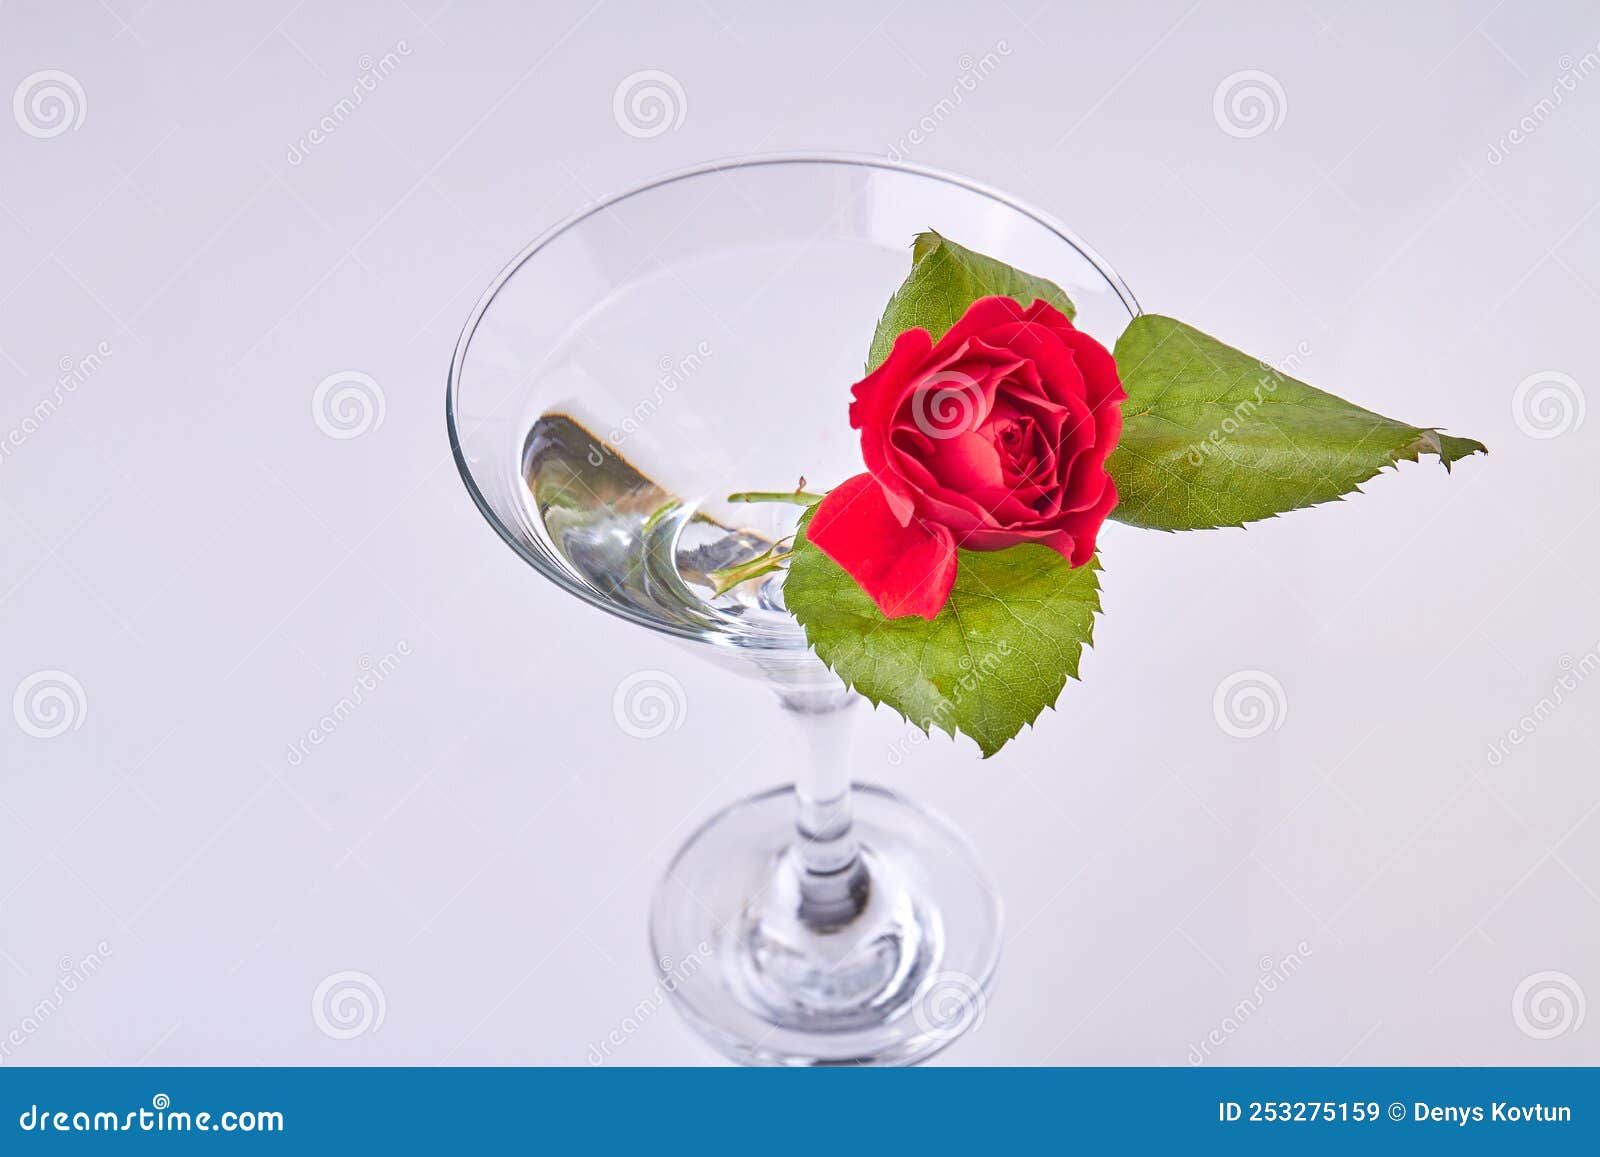 Tasse En Verre De Cocktail Avec Fleur De Rose Et Feuilles. Image